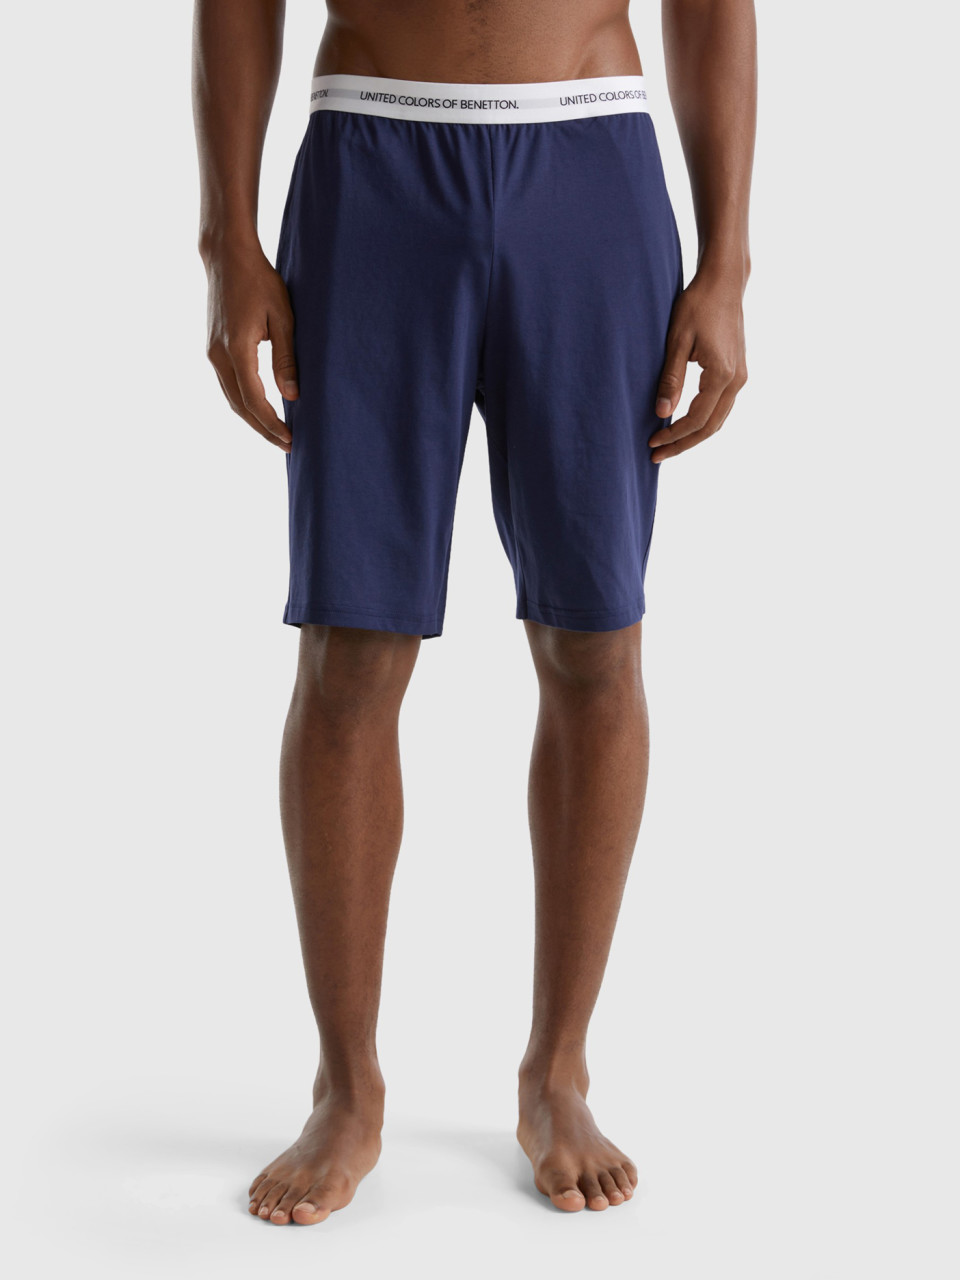 Benetton, 100% Cotton Shorts, Dark Blue, Men